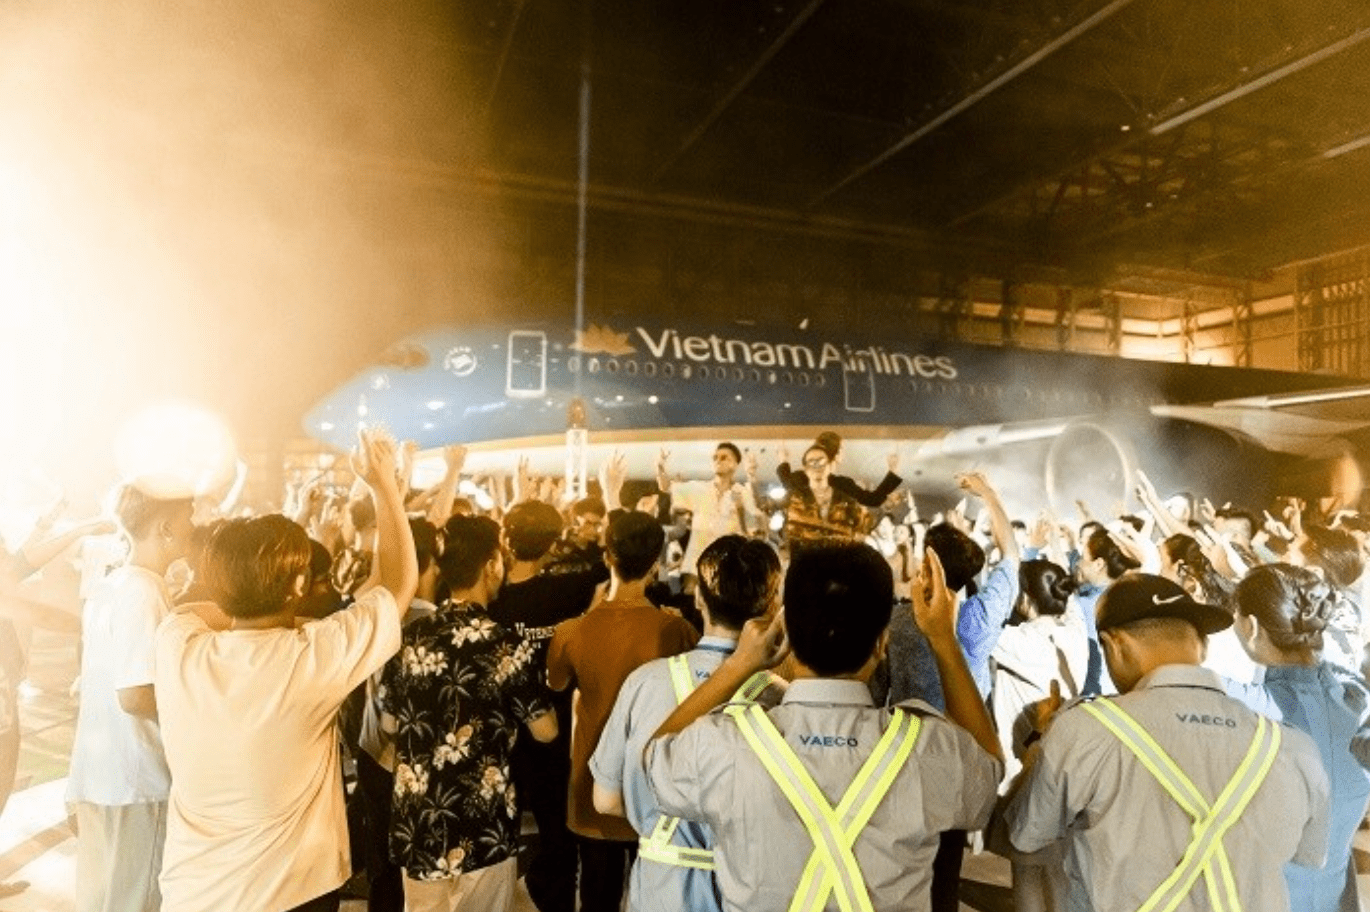 MV “Nhanh lên nhé” là sản phẩm kết hợp giữa Vietnam Airlines và các nghệ sĩ SpaceSpeaker